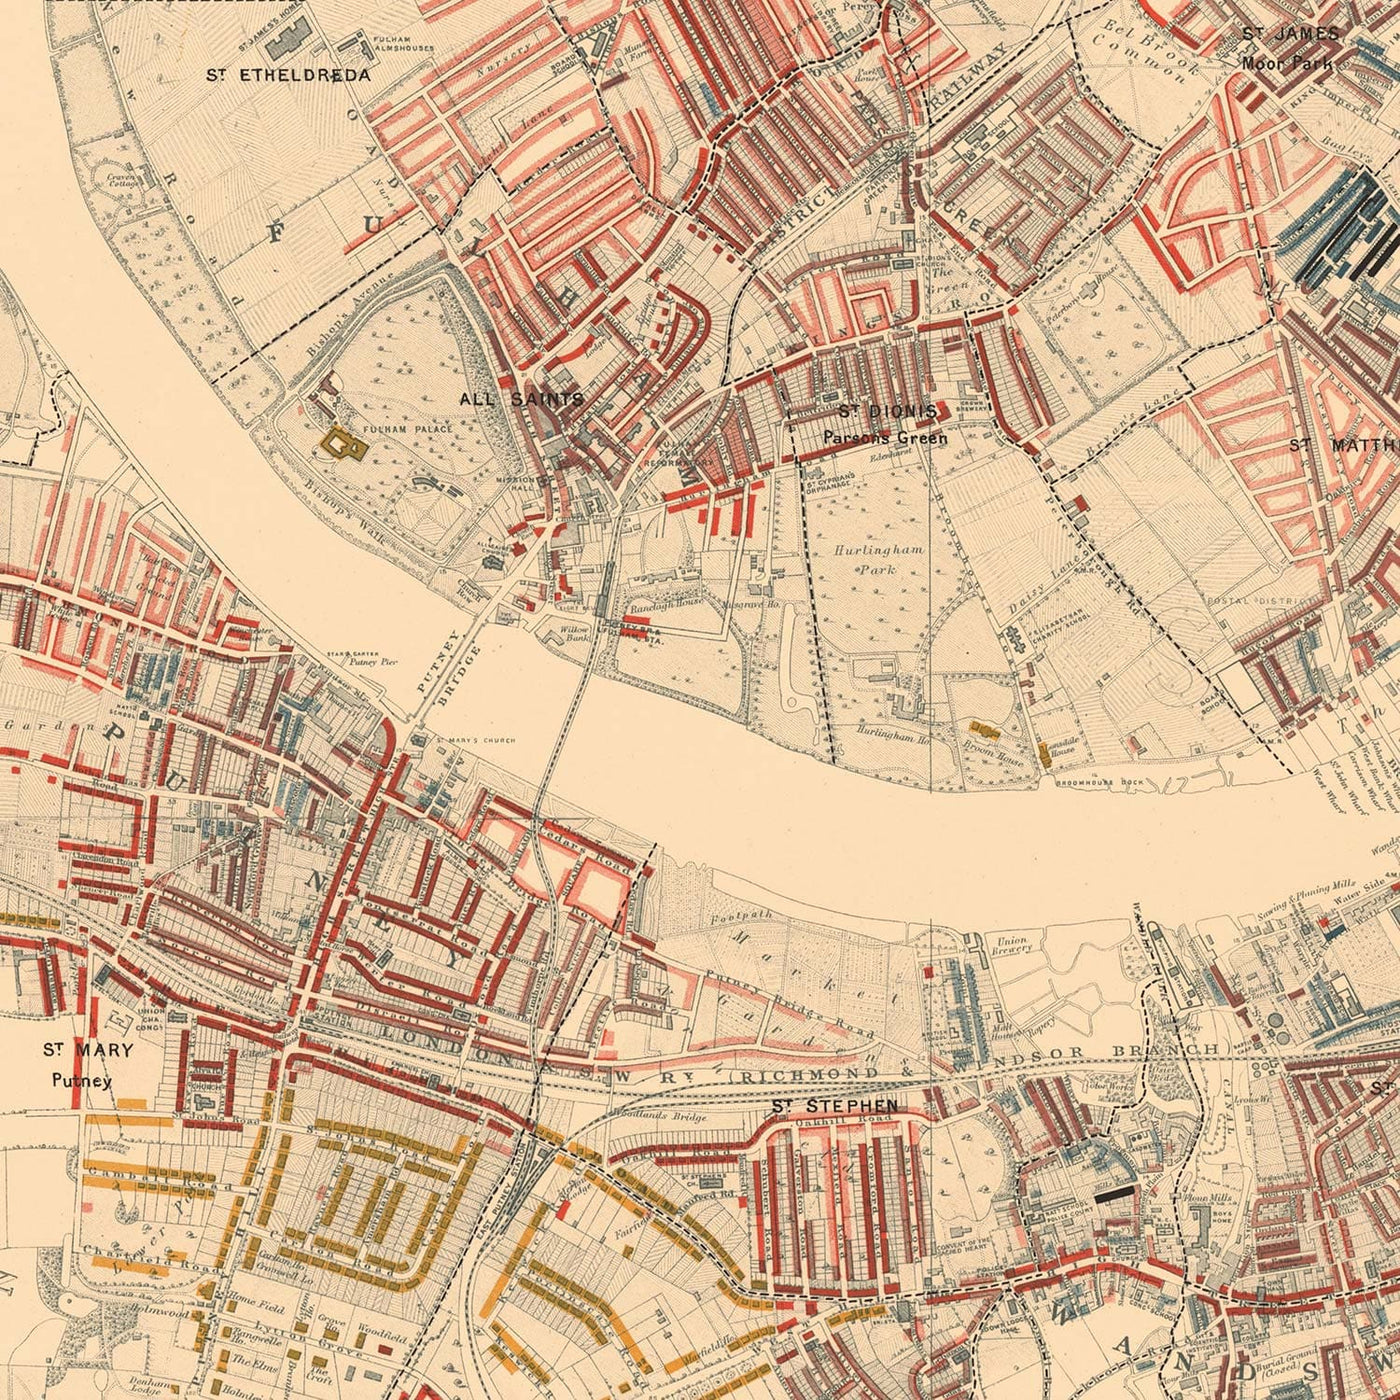 Karte der Londoner Armut 1898-9, südwestlicher Bezirk, von Charles Booth - Battersea, Clapham, Putney, Wandsworth - SW6, SW15, SW18, SW10, SW11, SW8, SW4